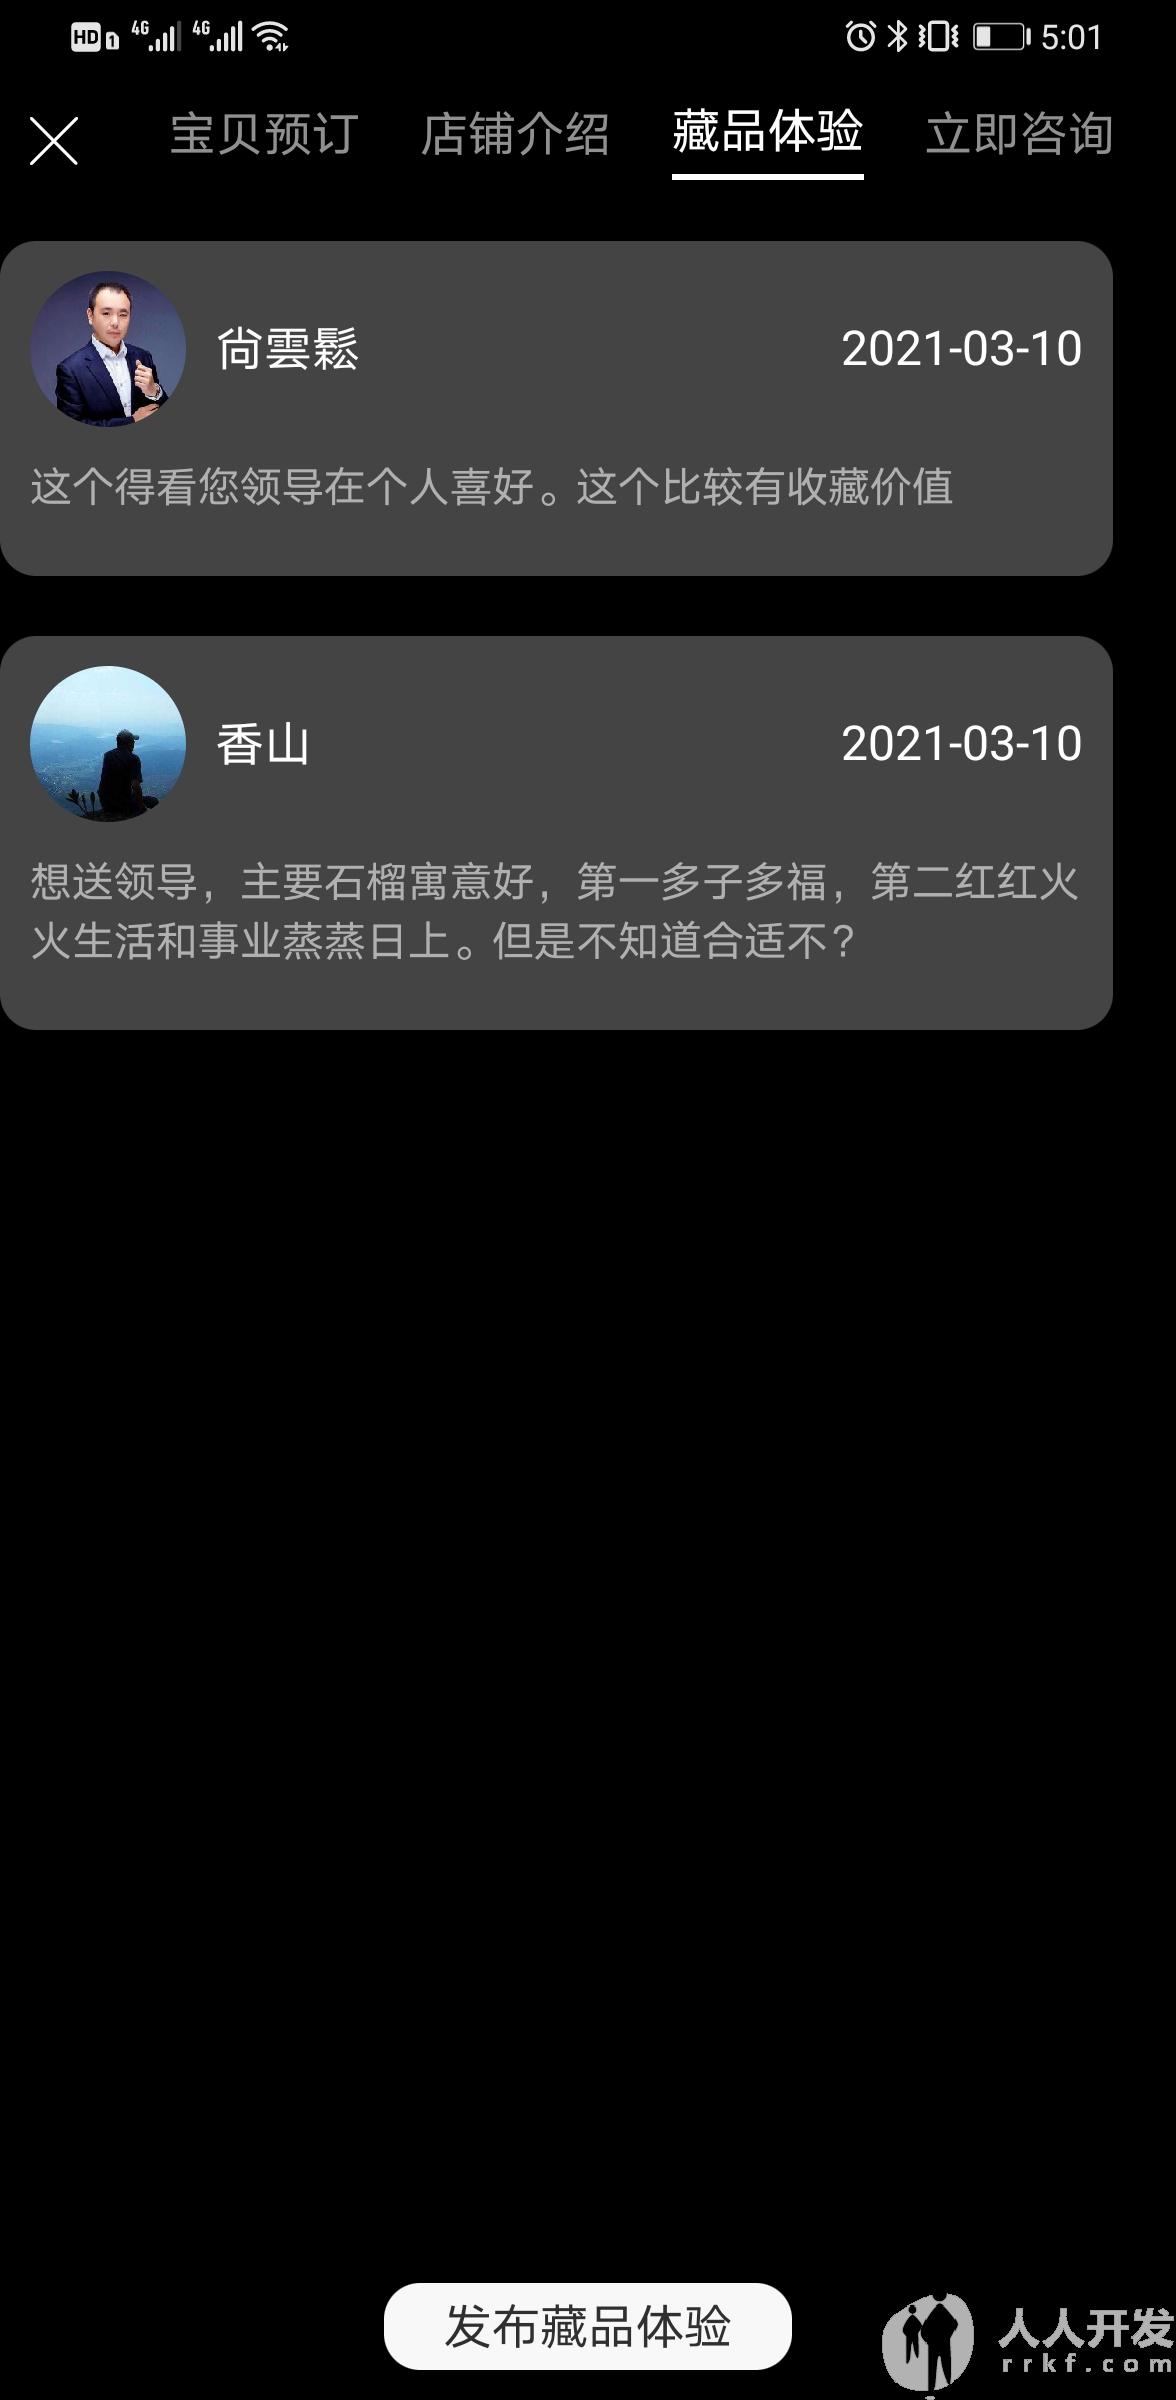 Screenshot 20210423 170157 com.yiyuanyoudao.app